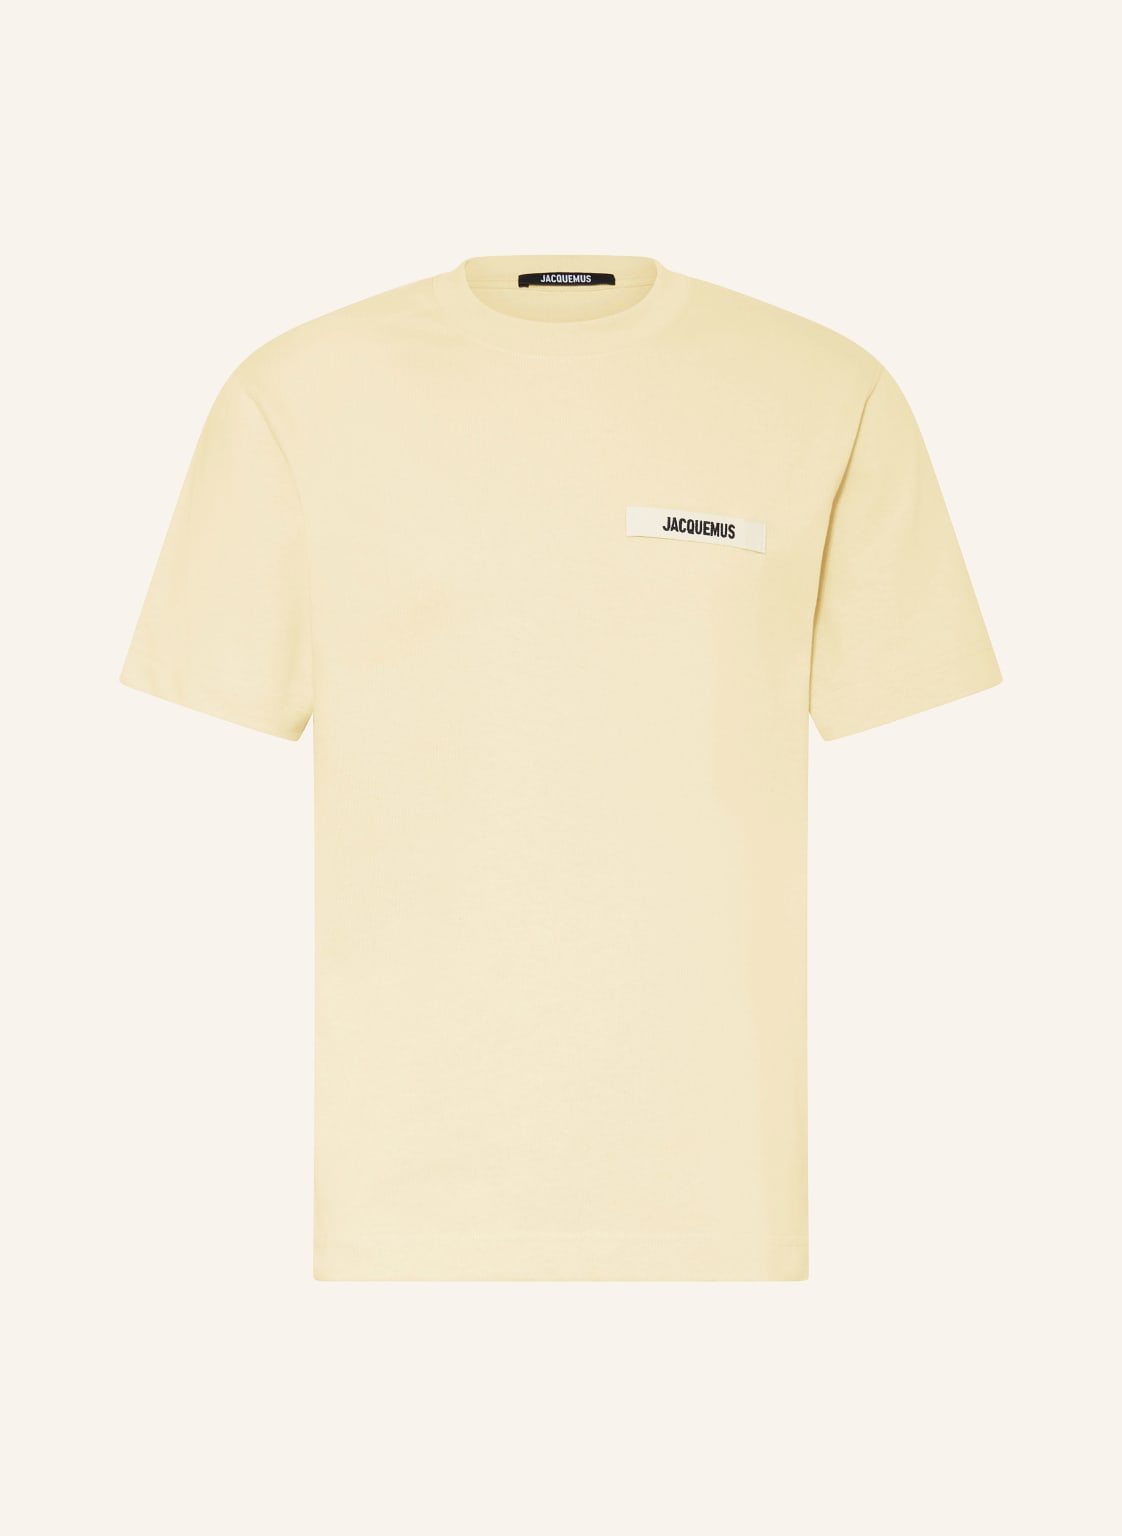 Jacquemus T-Shirt Le Tshirt Gros Grain gelb von JACQUEMUS